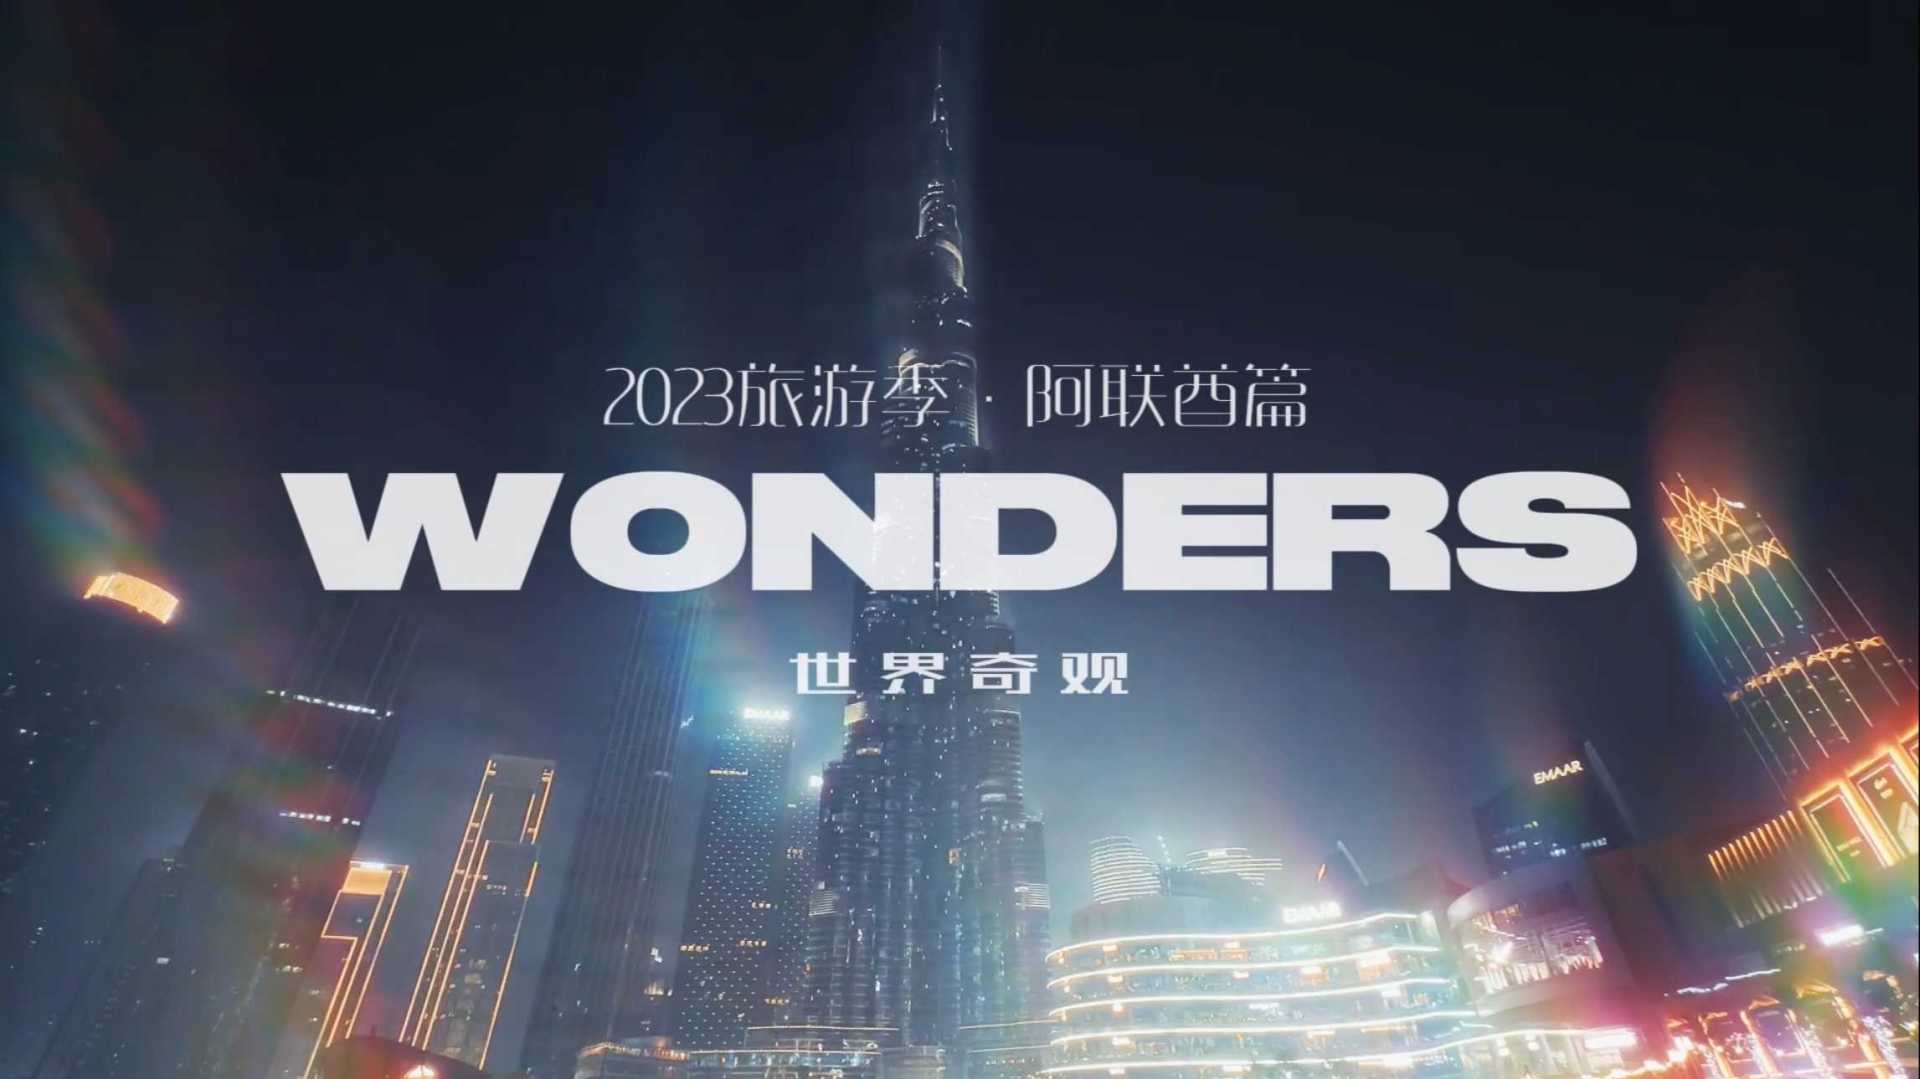 2023旅游季 · 阿联酋篇  第5️⃣集《Wonders 世界奇观（上）》